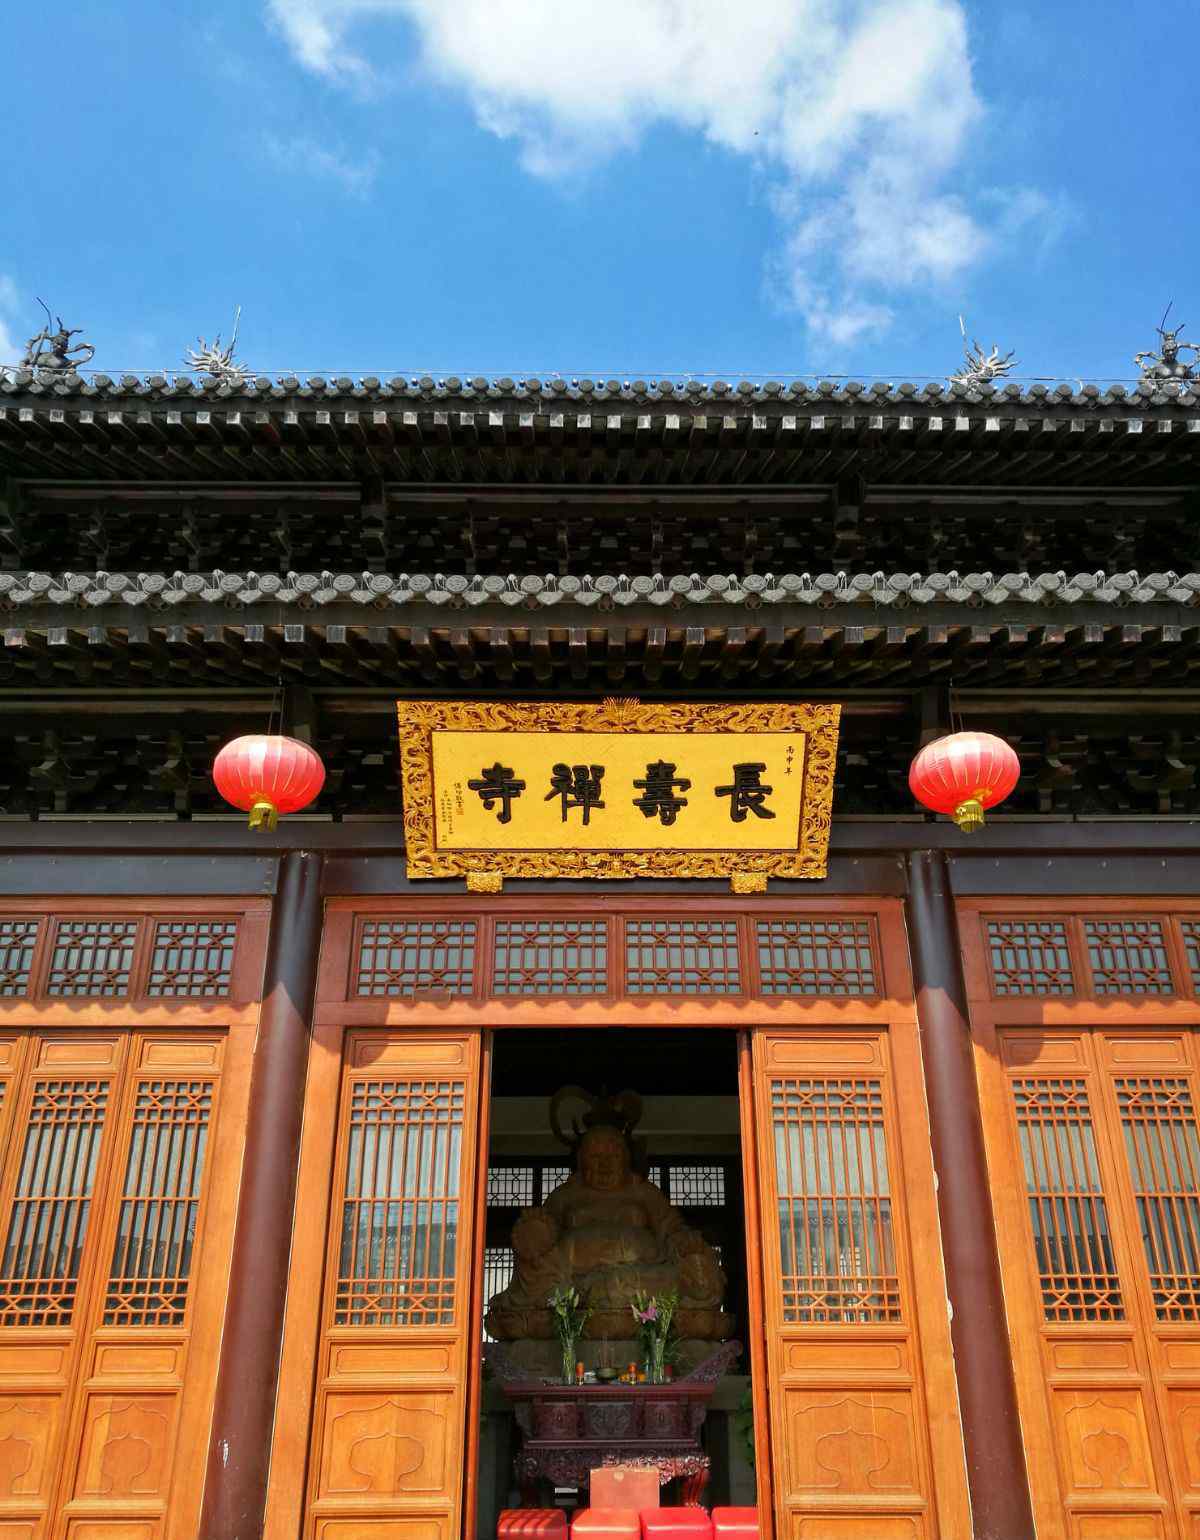 上海长寿禅寺 上海浦江镇一日游